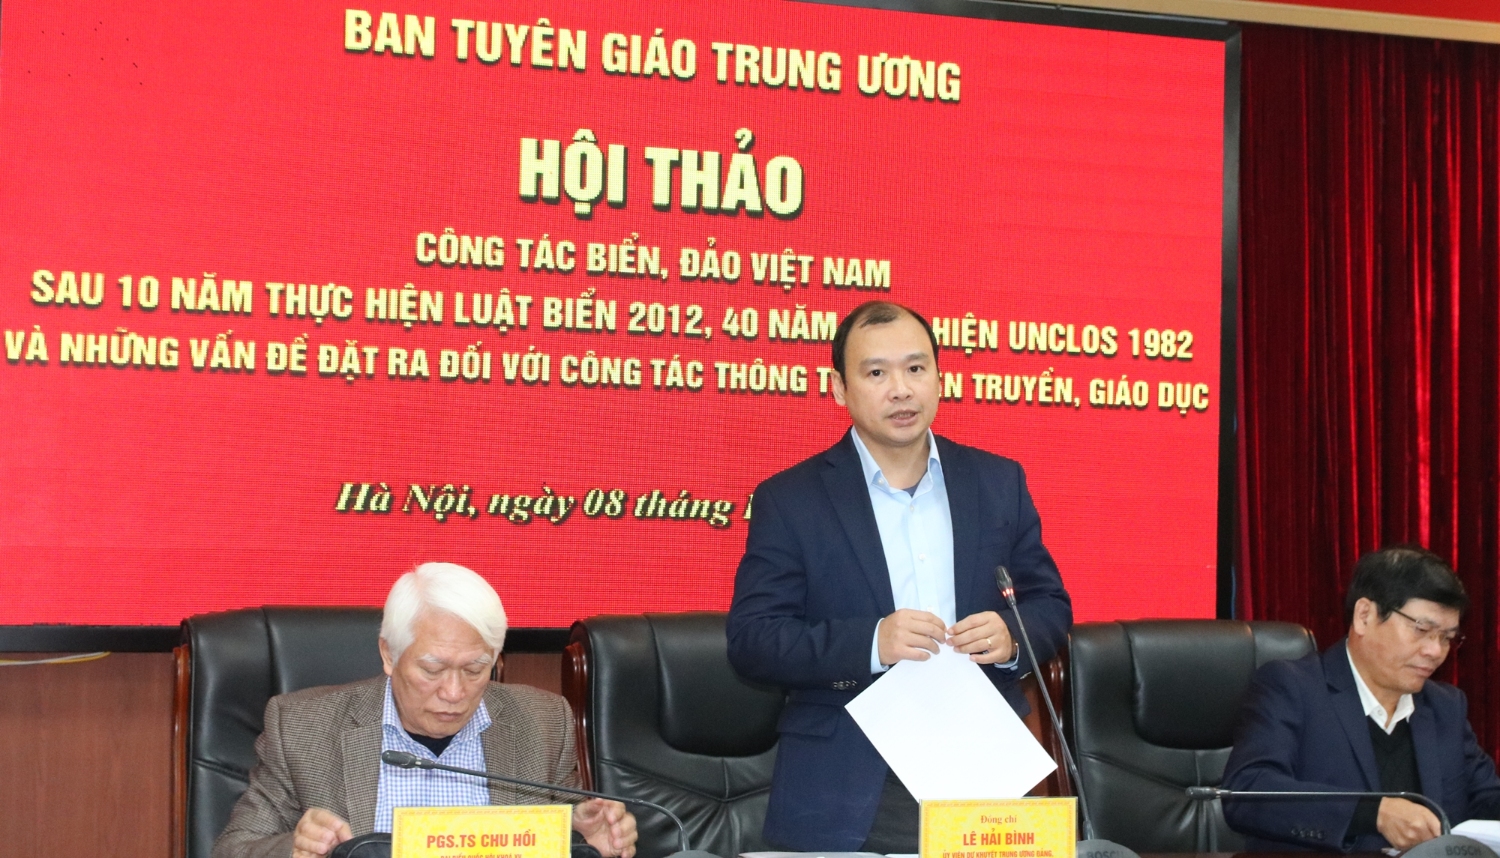 Đồng chí Lê Hải Bình phát biểu khai mạc Hội thảo khoa học.